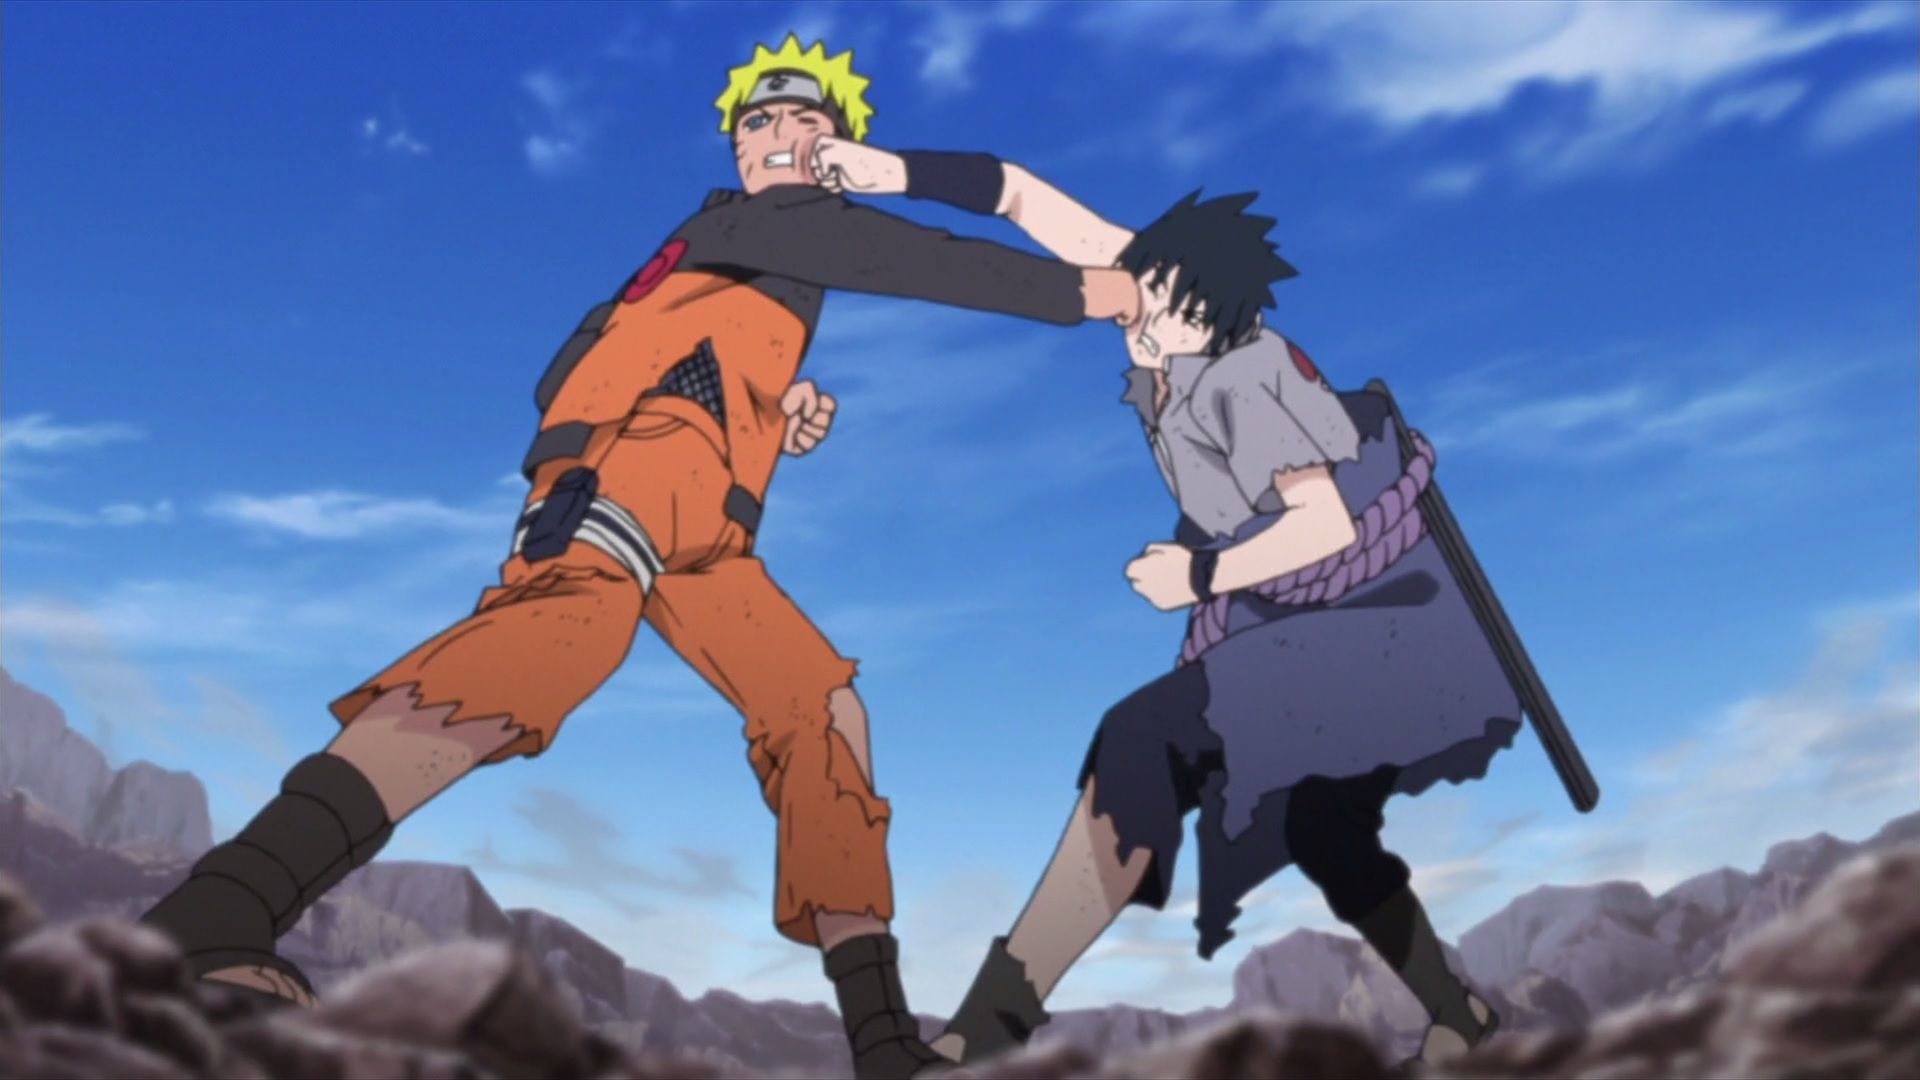 Naruto vs Sasuke - Classic [FULL FIGHT] 